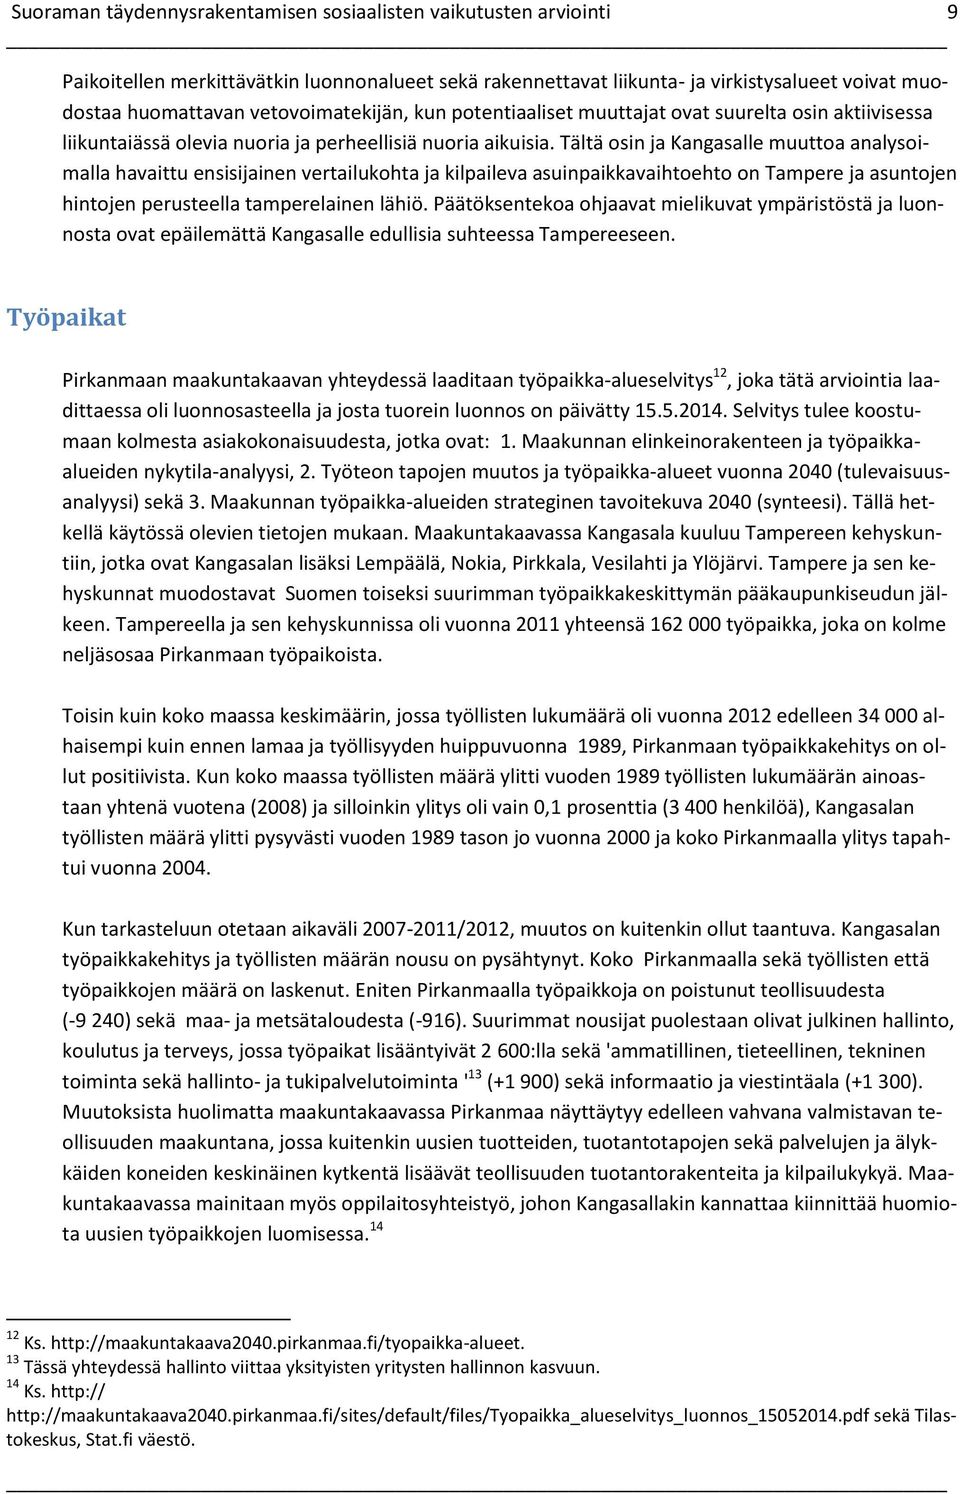 Tältä osin ja Kangasalle muuttoa analysoimalla havaittu ensisijainen vertailukohta ja kilpaileva asuinpaikkavaihtoehto on Tampere ja asuntojen hintojen perusteella tamperelainen lähiö.